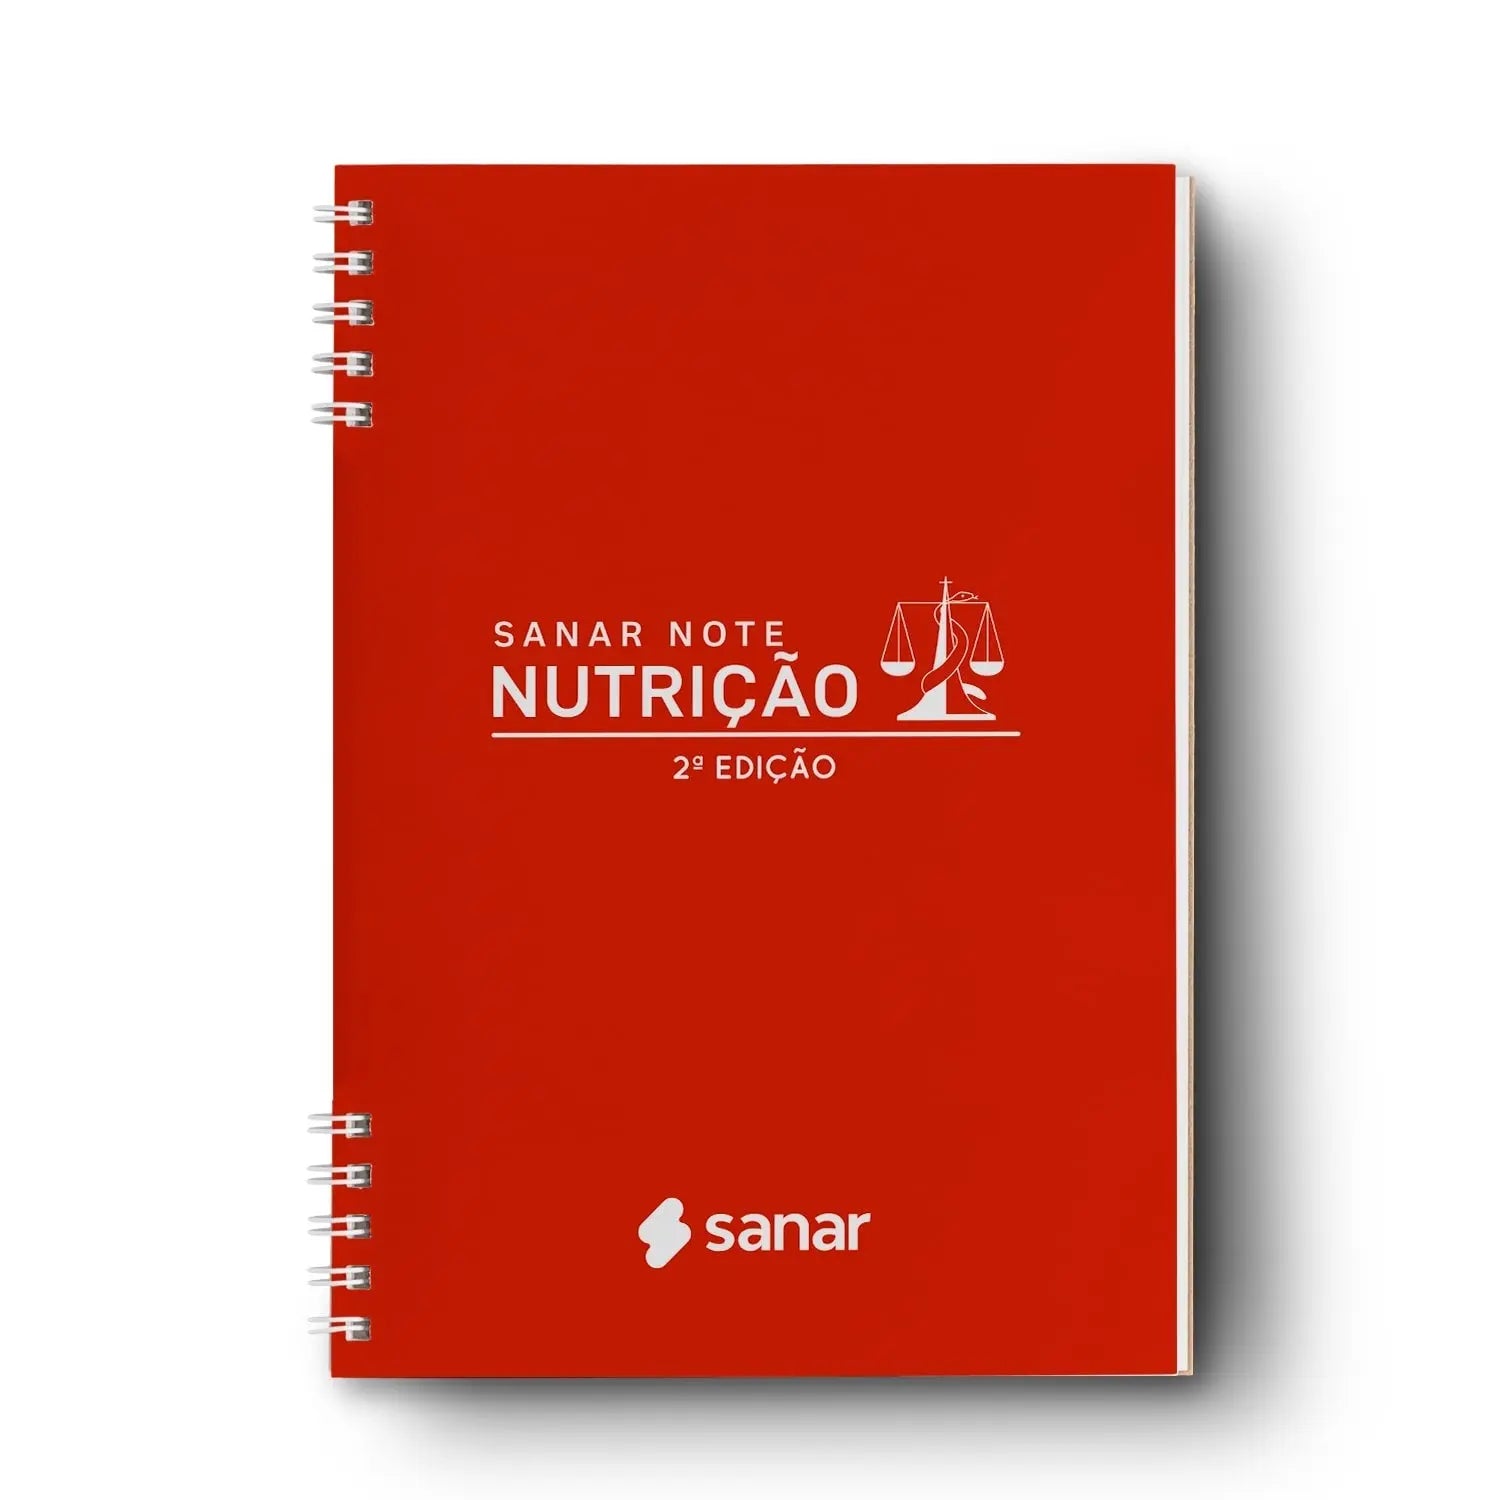 Imagem do livro Sanar Note Nutrição 2ª Edição